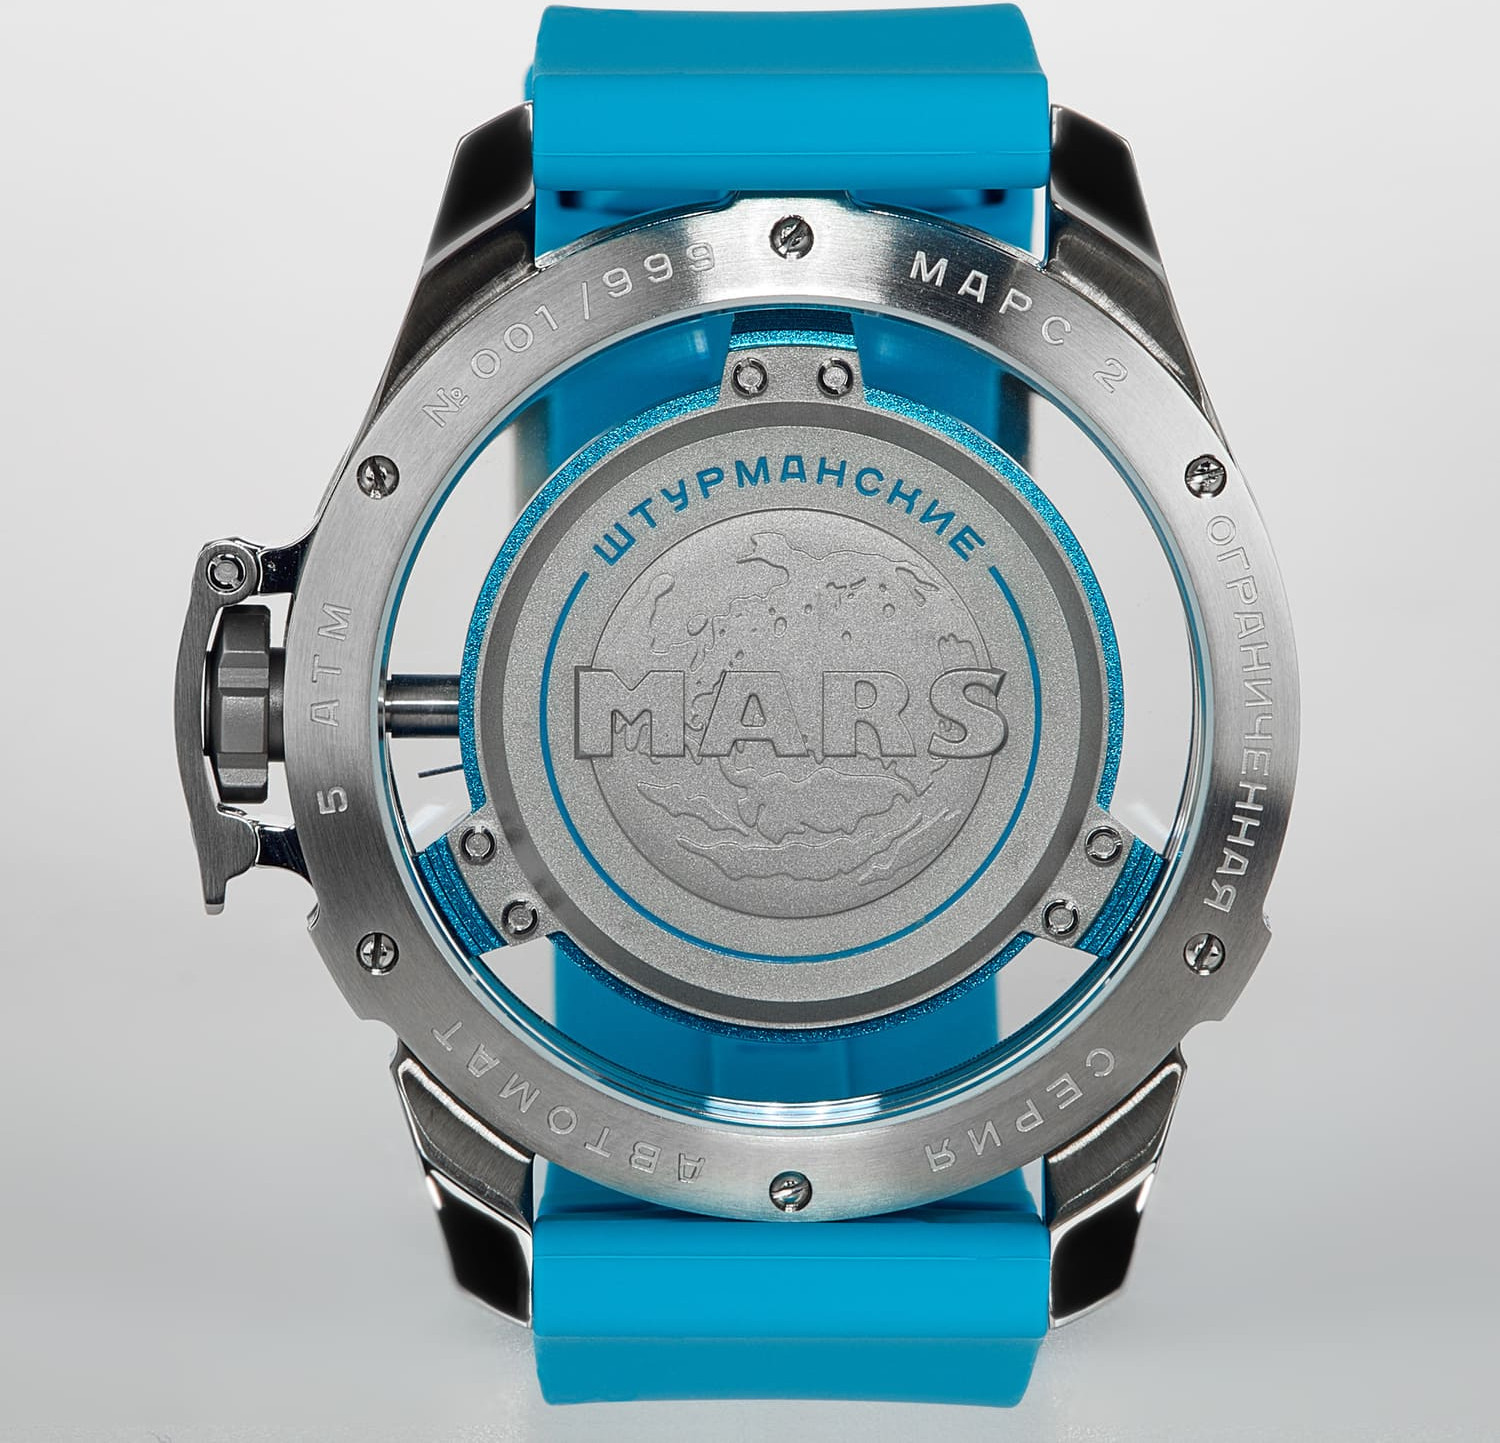  Sturmanskie Mars 2 Automatic turquoise 